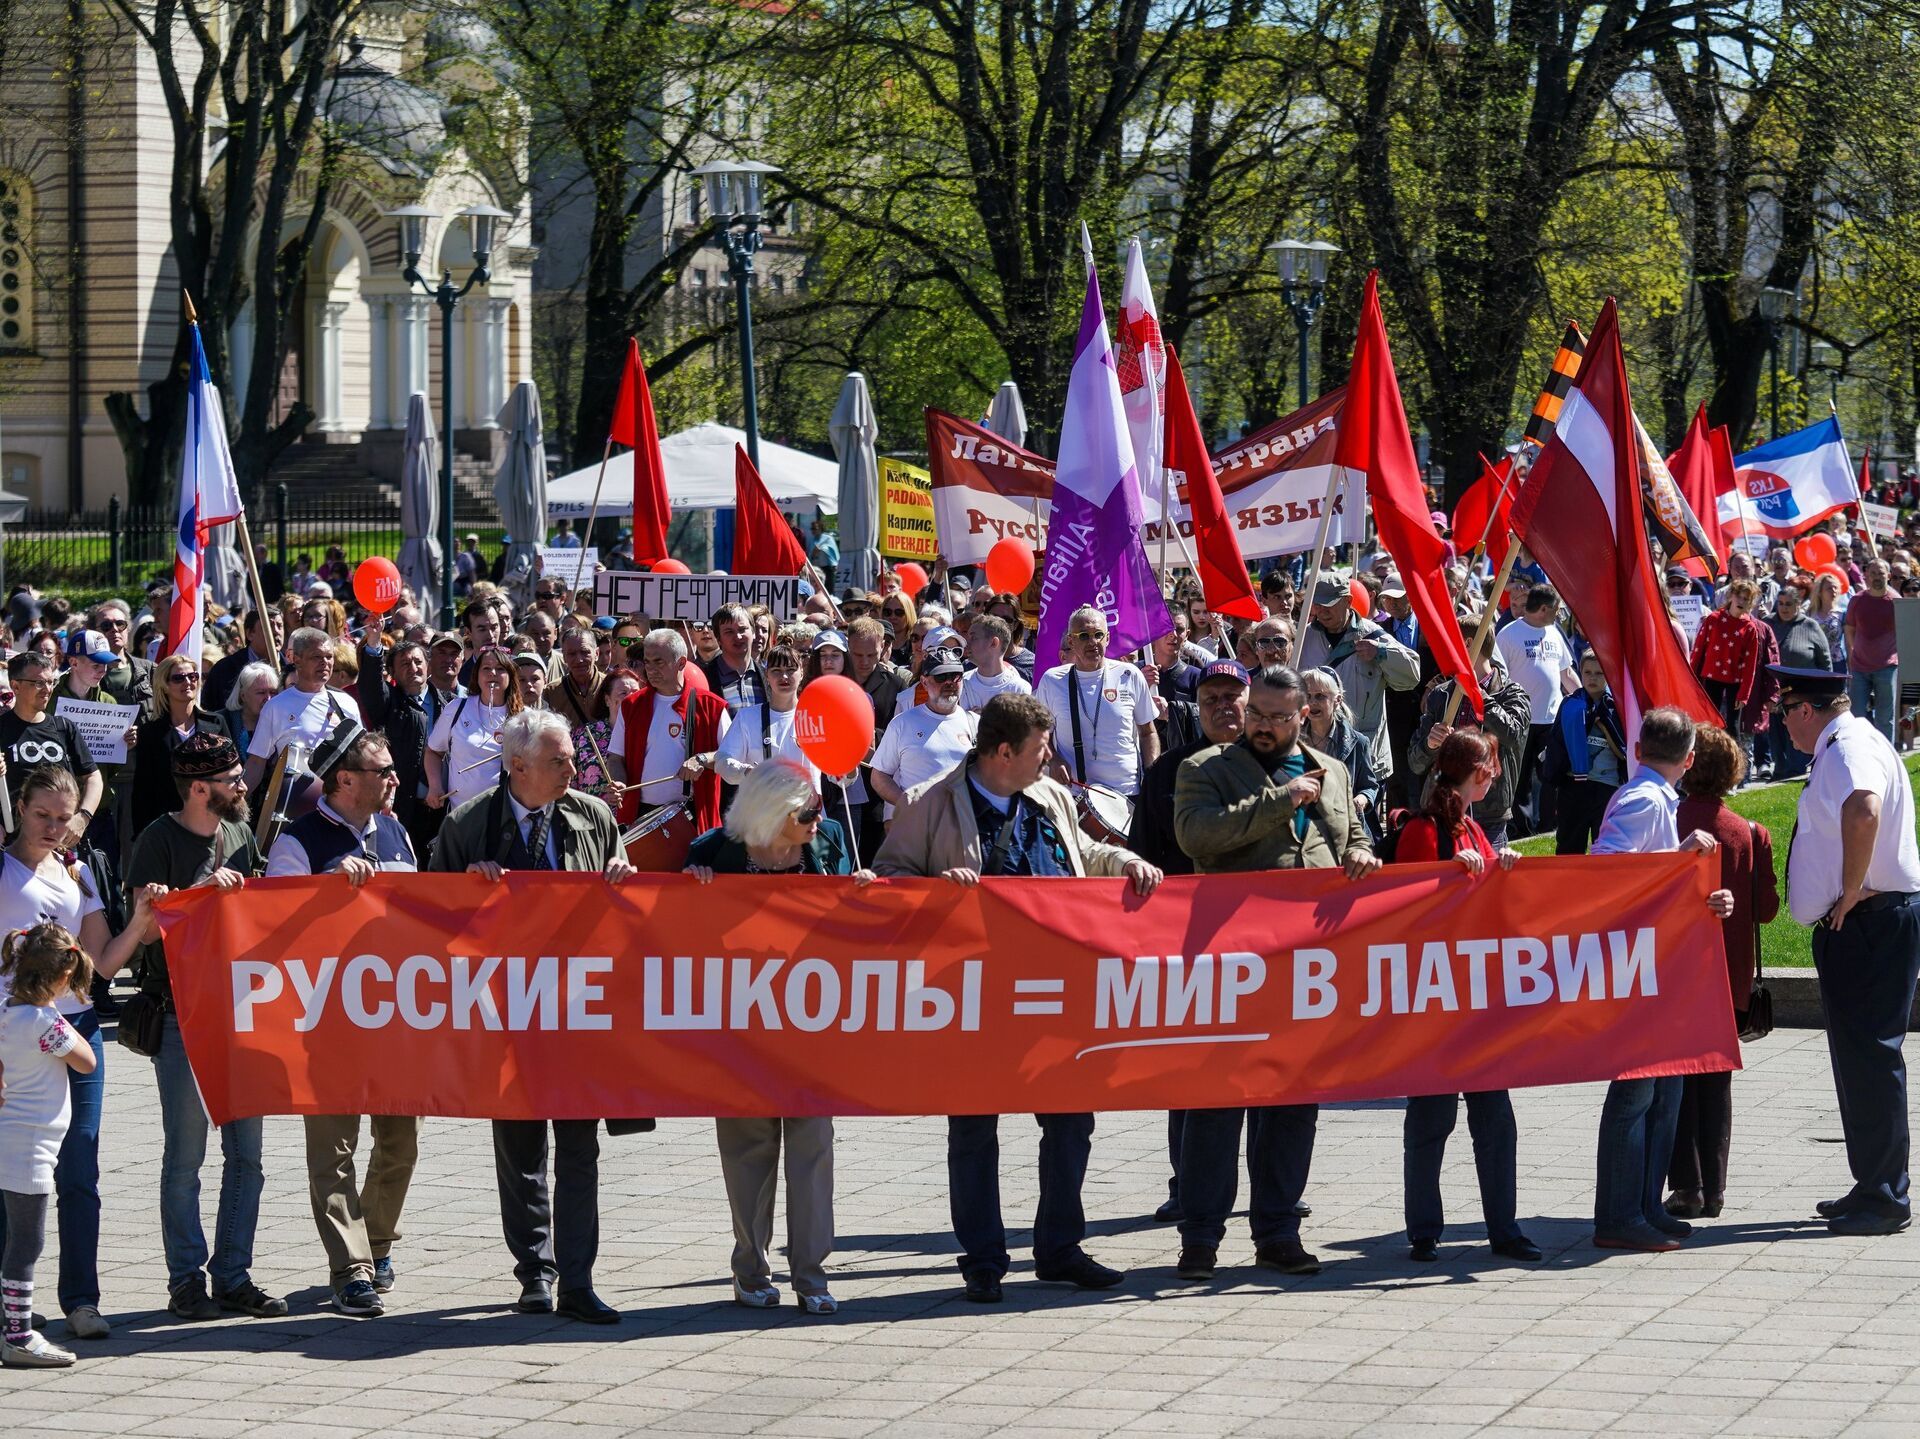 Пророссийский митинг в Латвии в 2018 году. Плакат очень конкретный - фото 121695